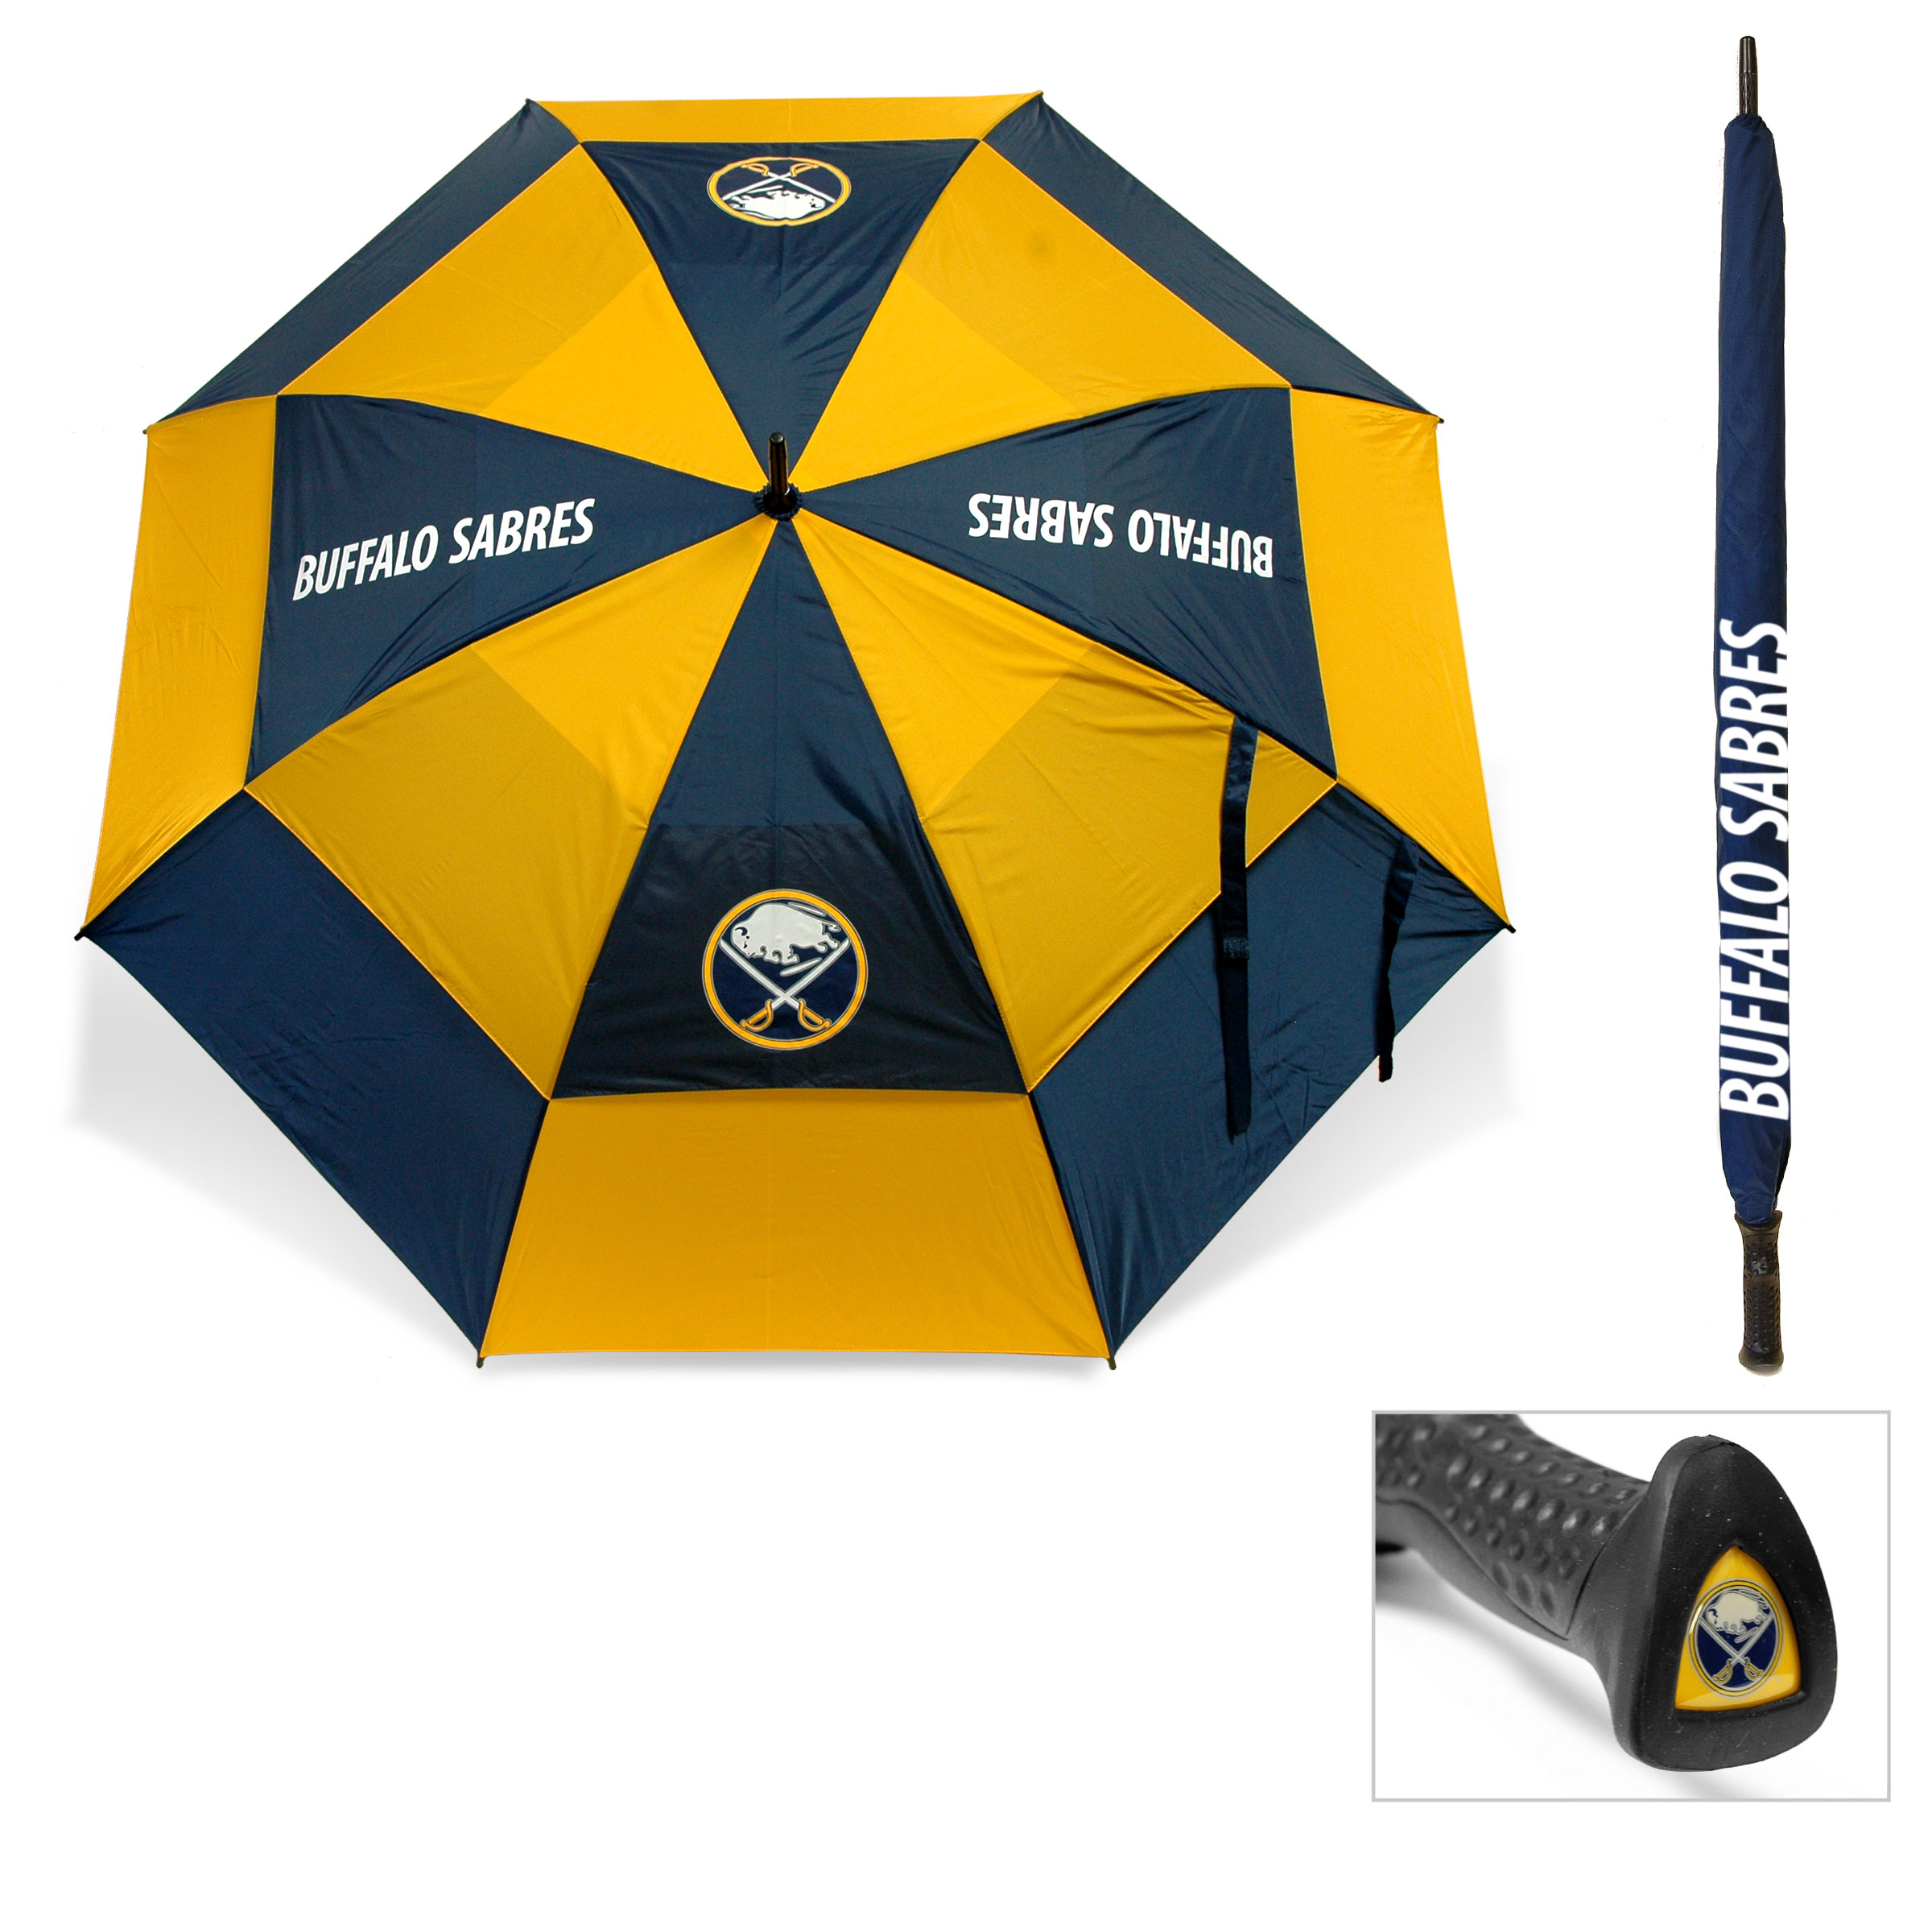 Buffalo Sabres Umbrella